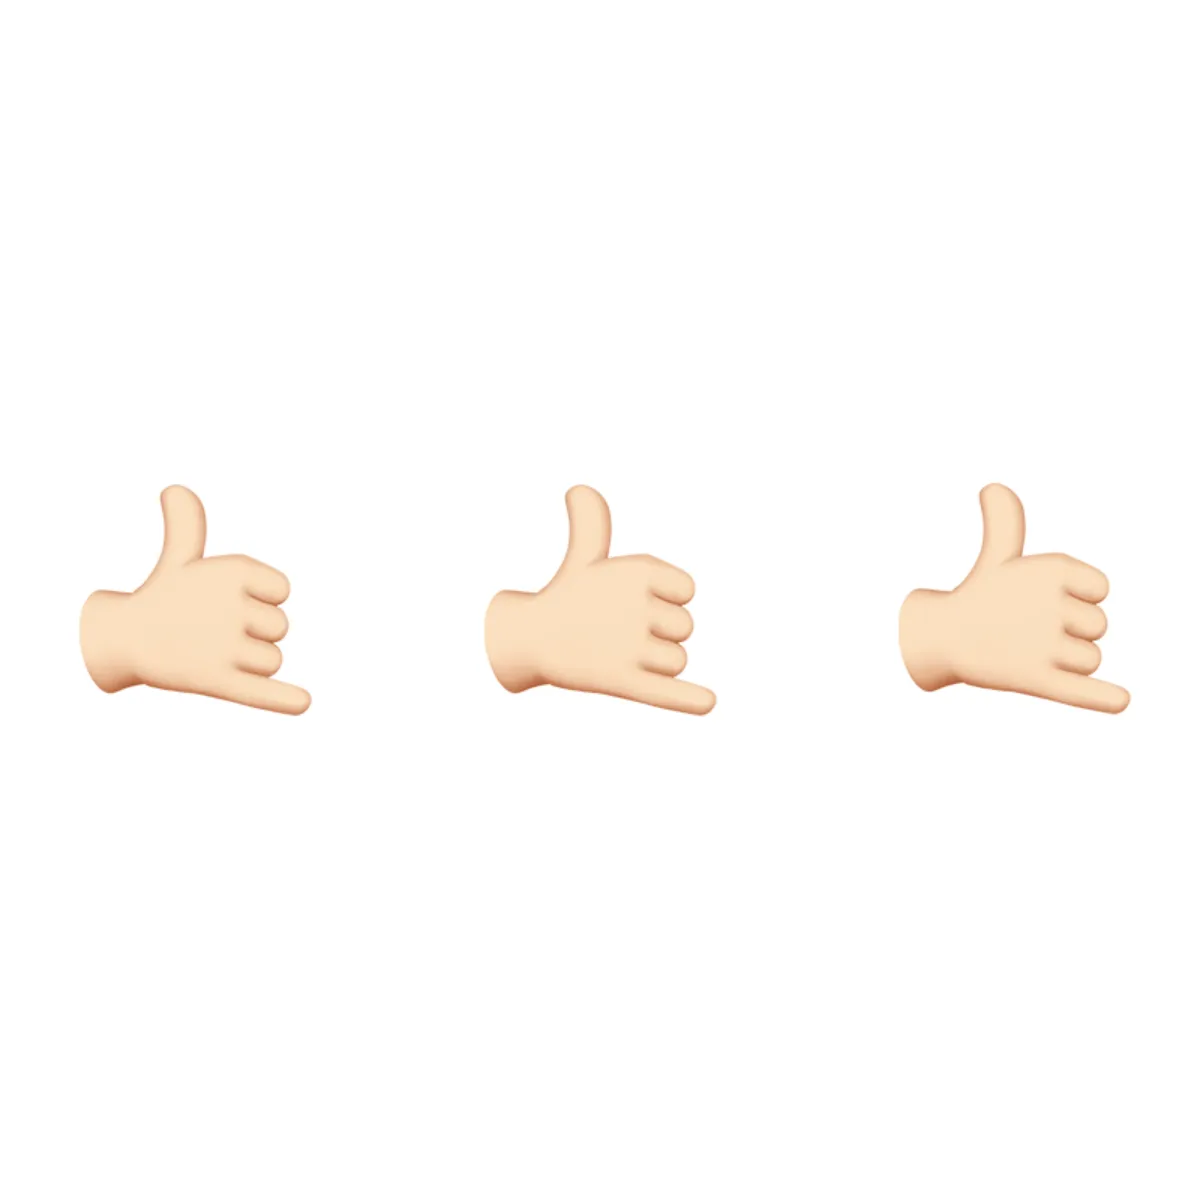 Emoji del dedo surfero
